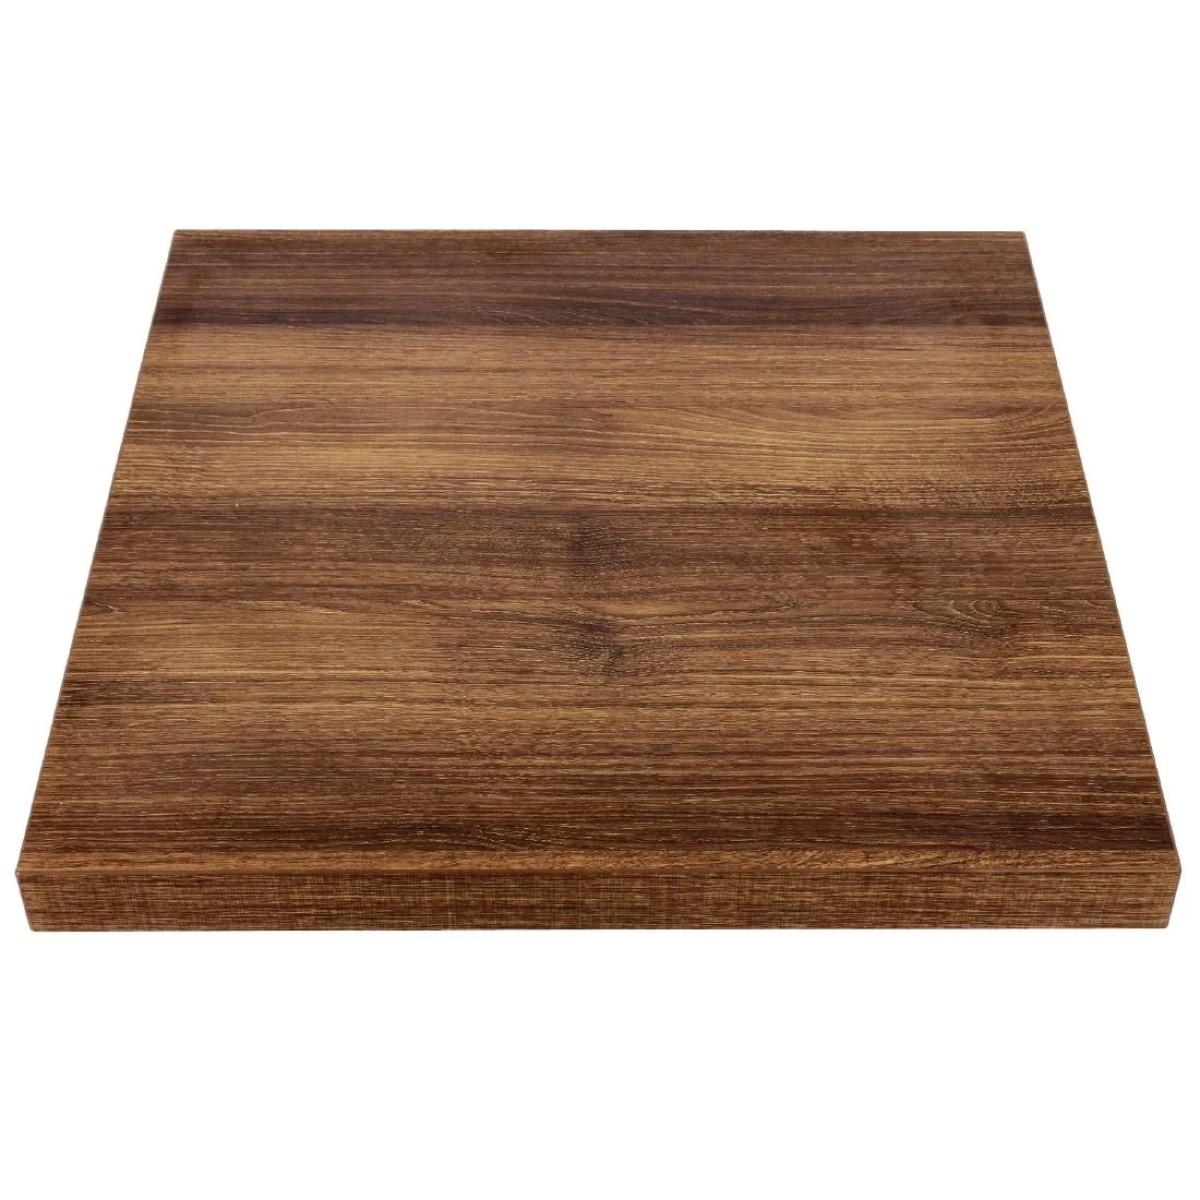 Bolero Pre Drilled Square Table Top Rustic Oak 600mm Gr324